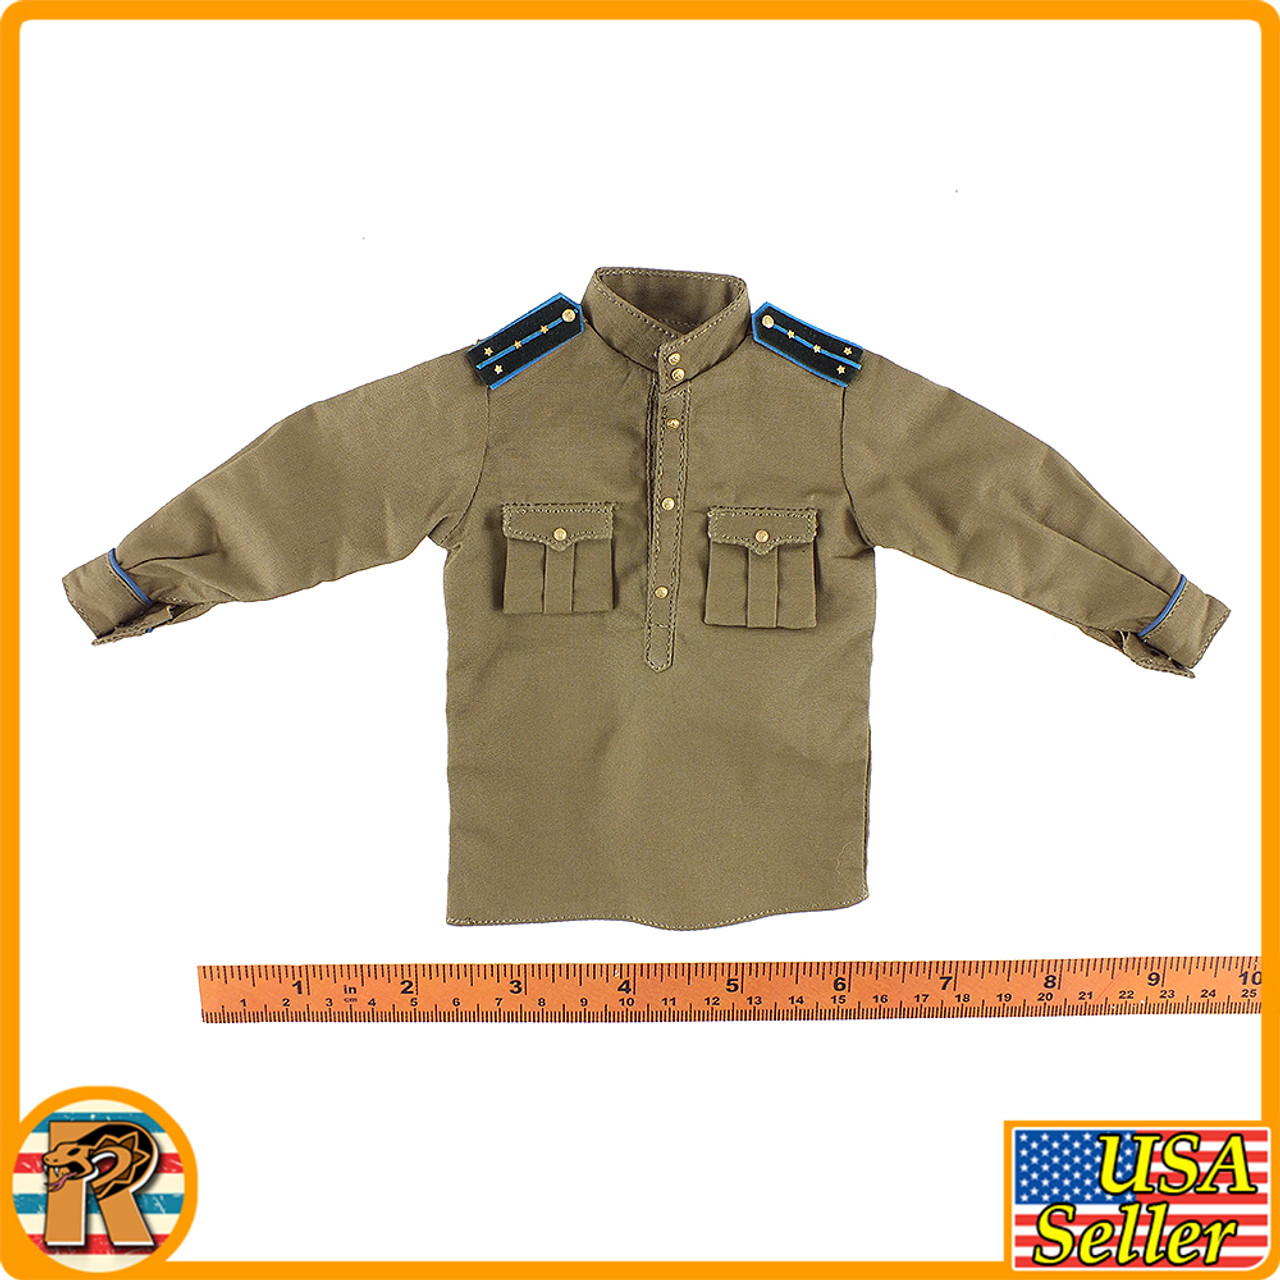 Soviet NKVD Officer - Long Sleeve Shirt #2 - 1/6 Scale -